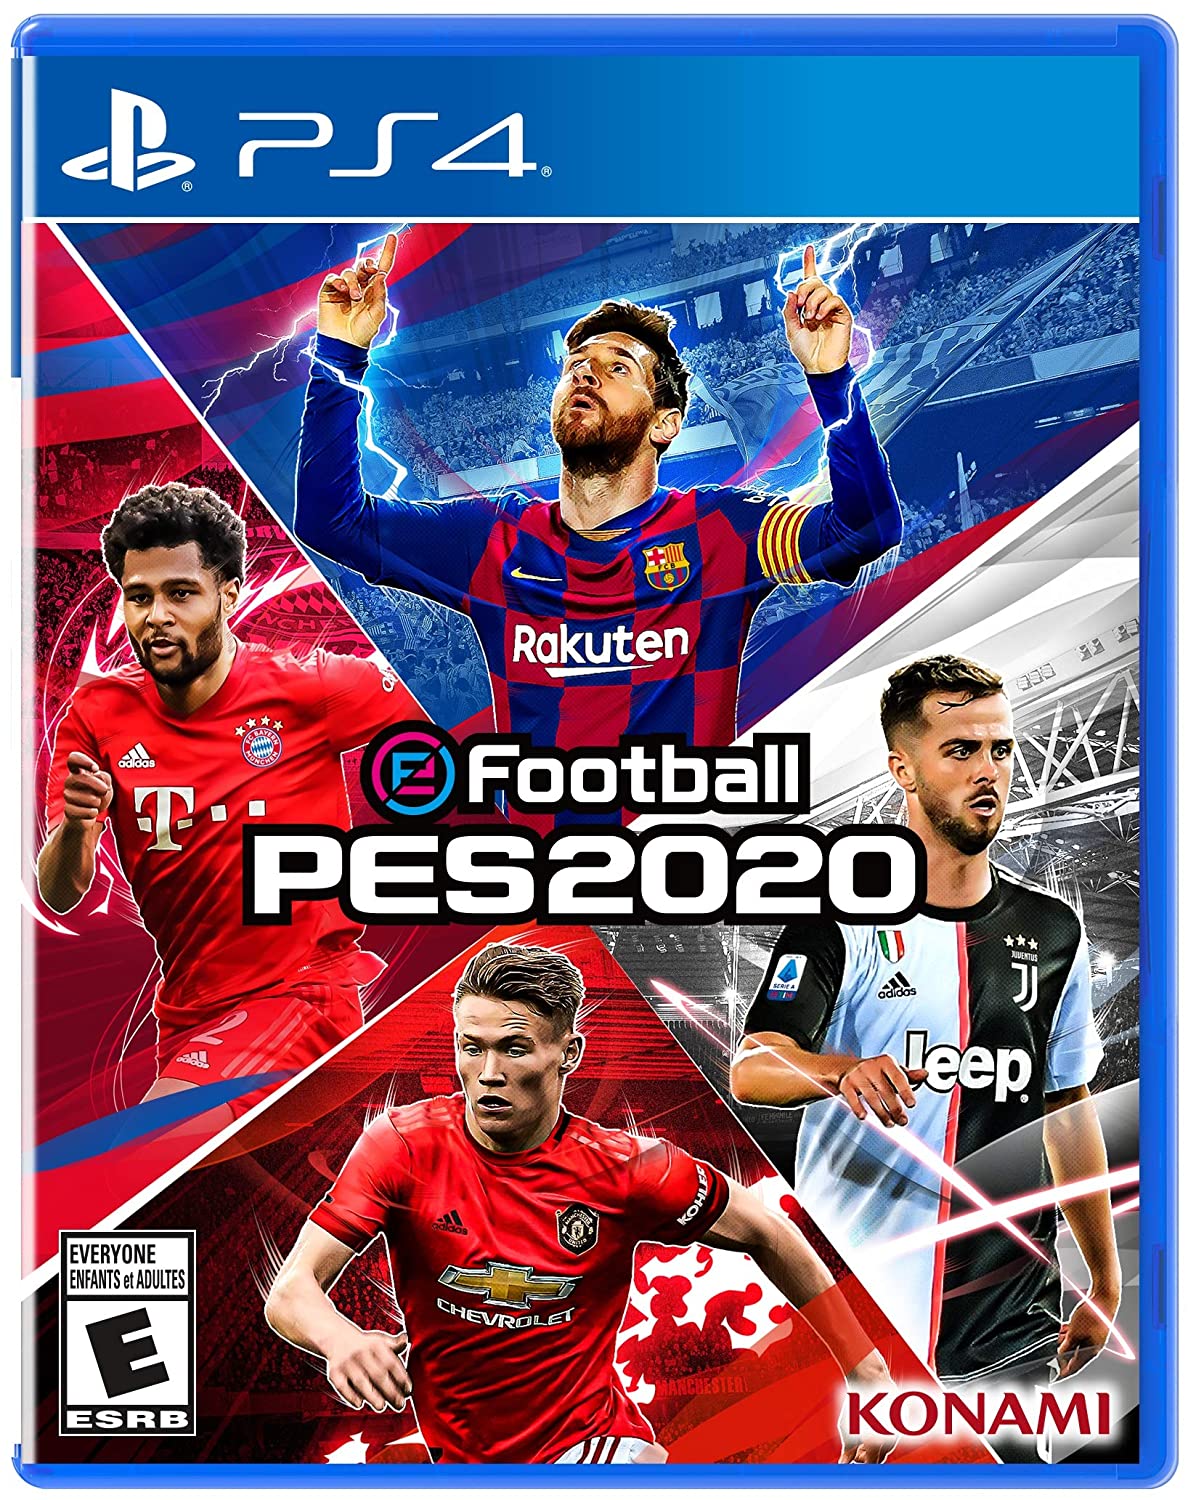 Efootball Pro Evolution Soccer 2020 Box Art